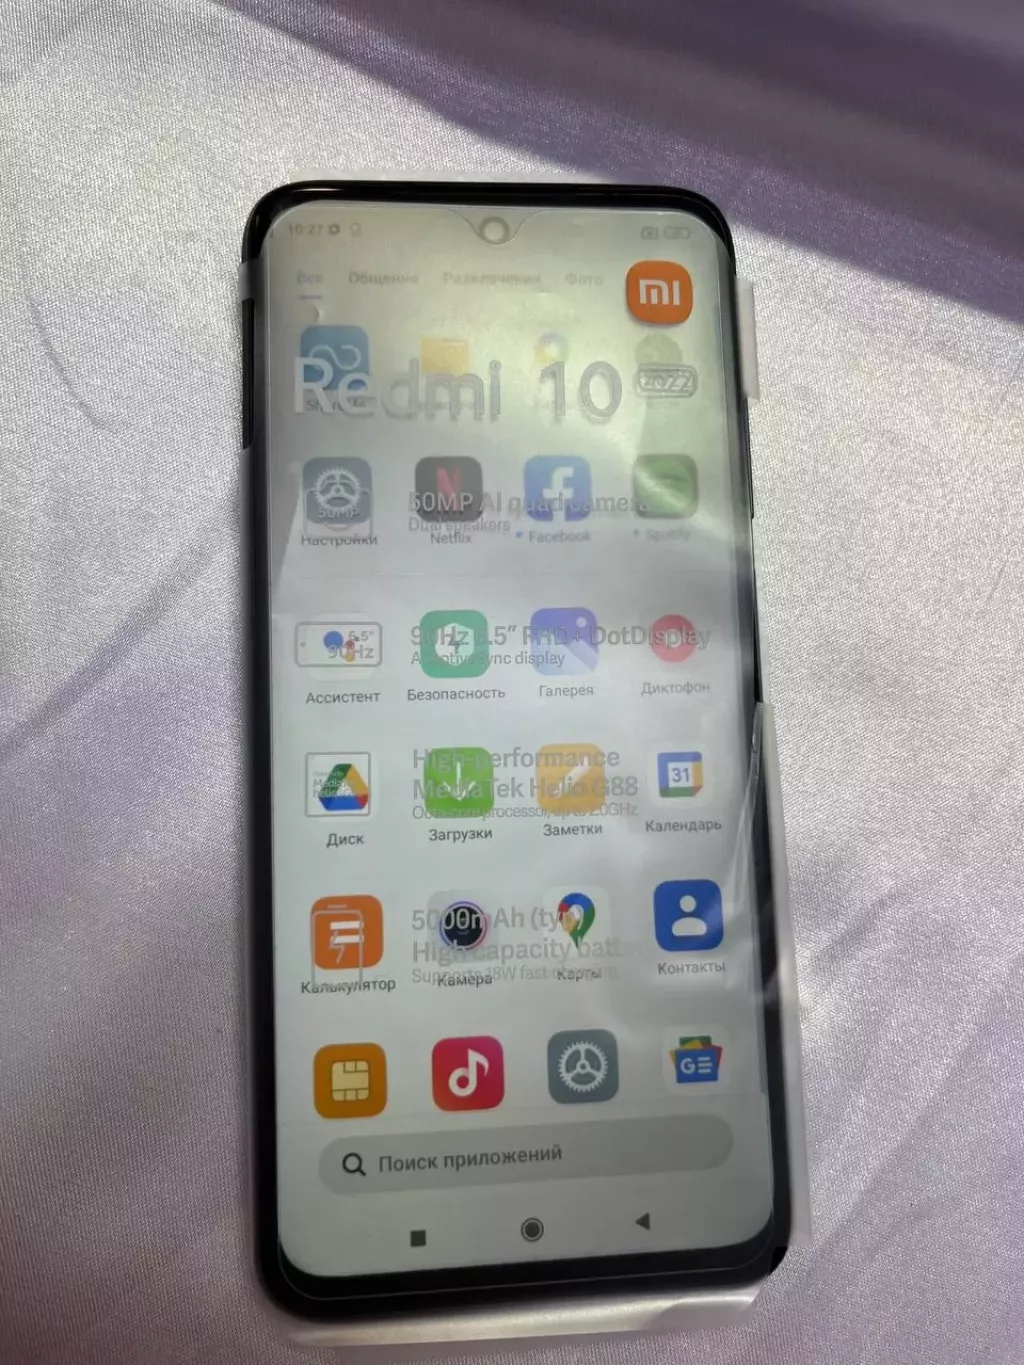 Купить б/у Xiaomi Redmi 10 64gb -0